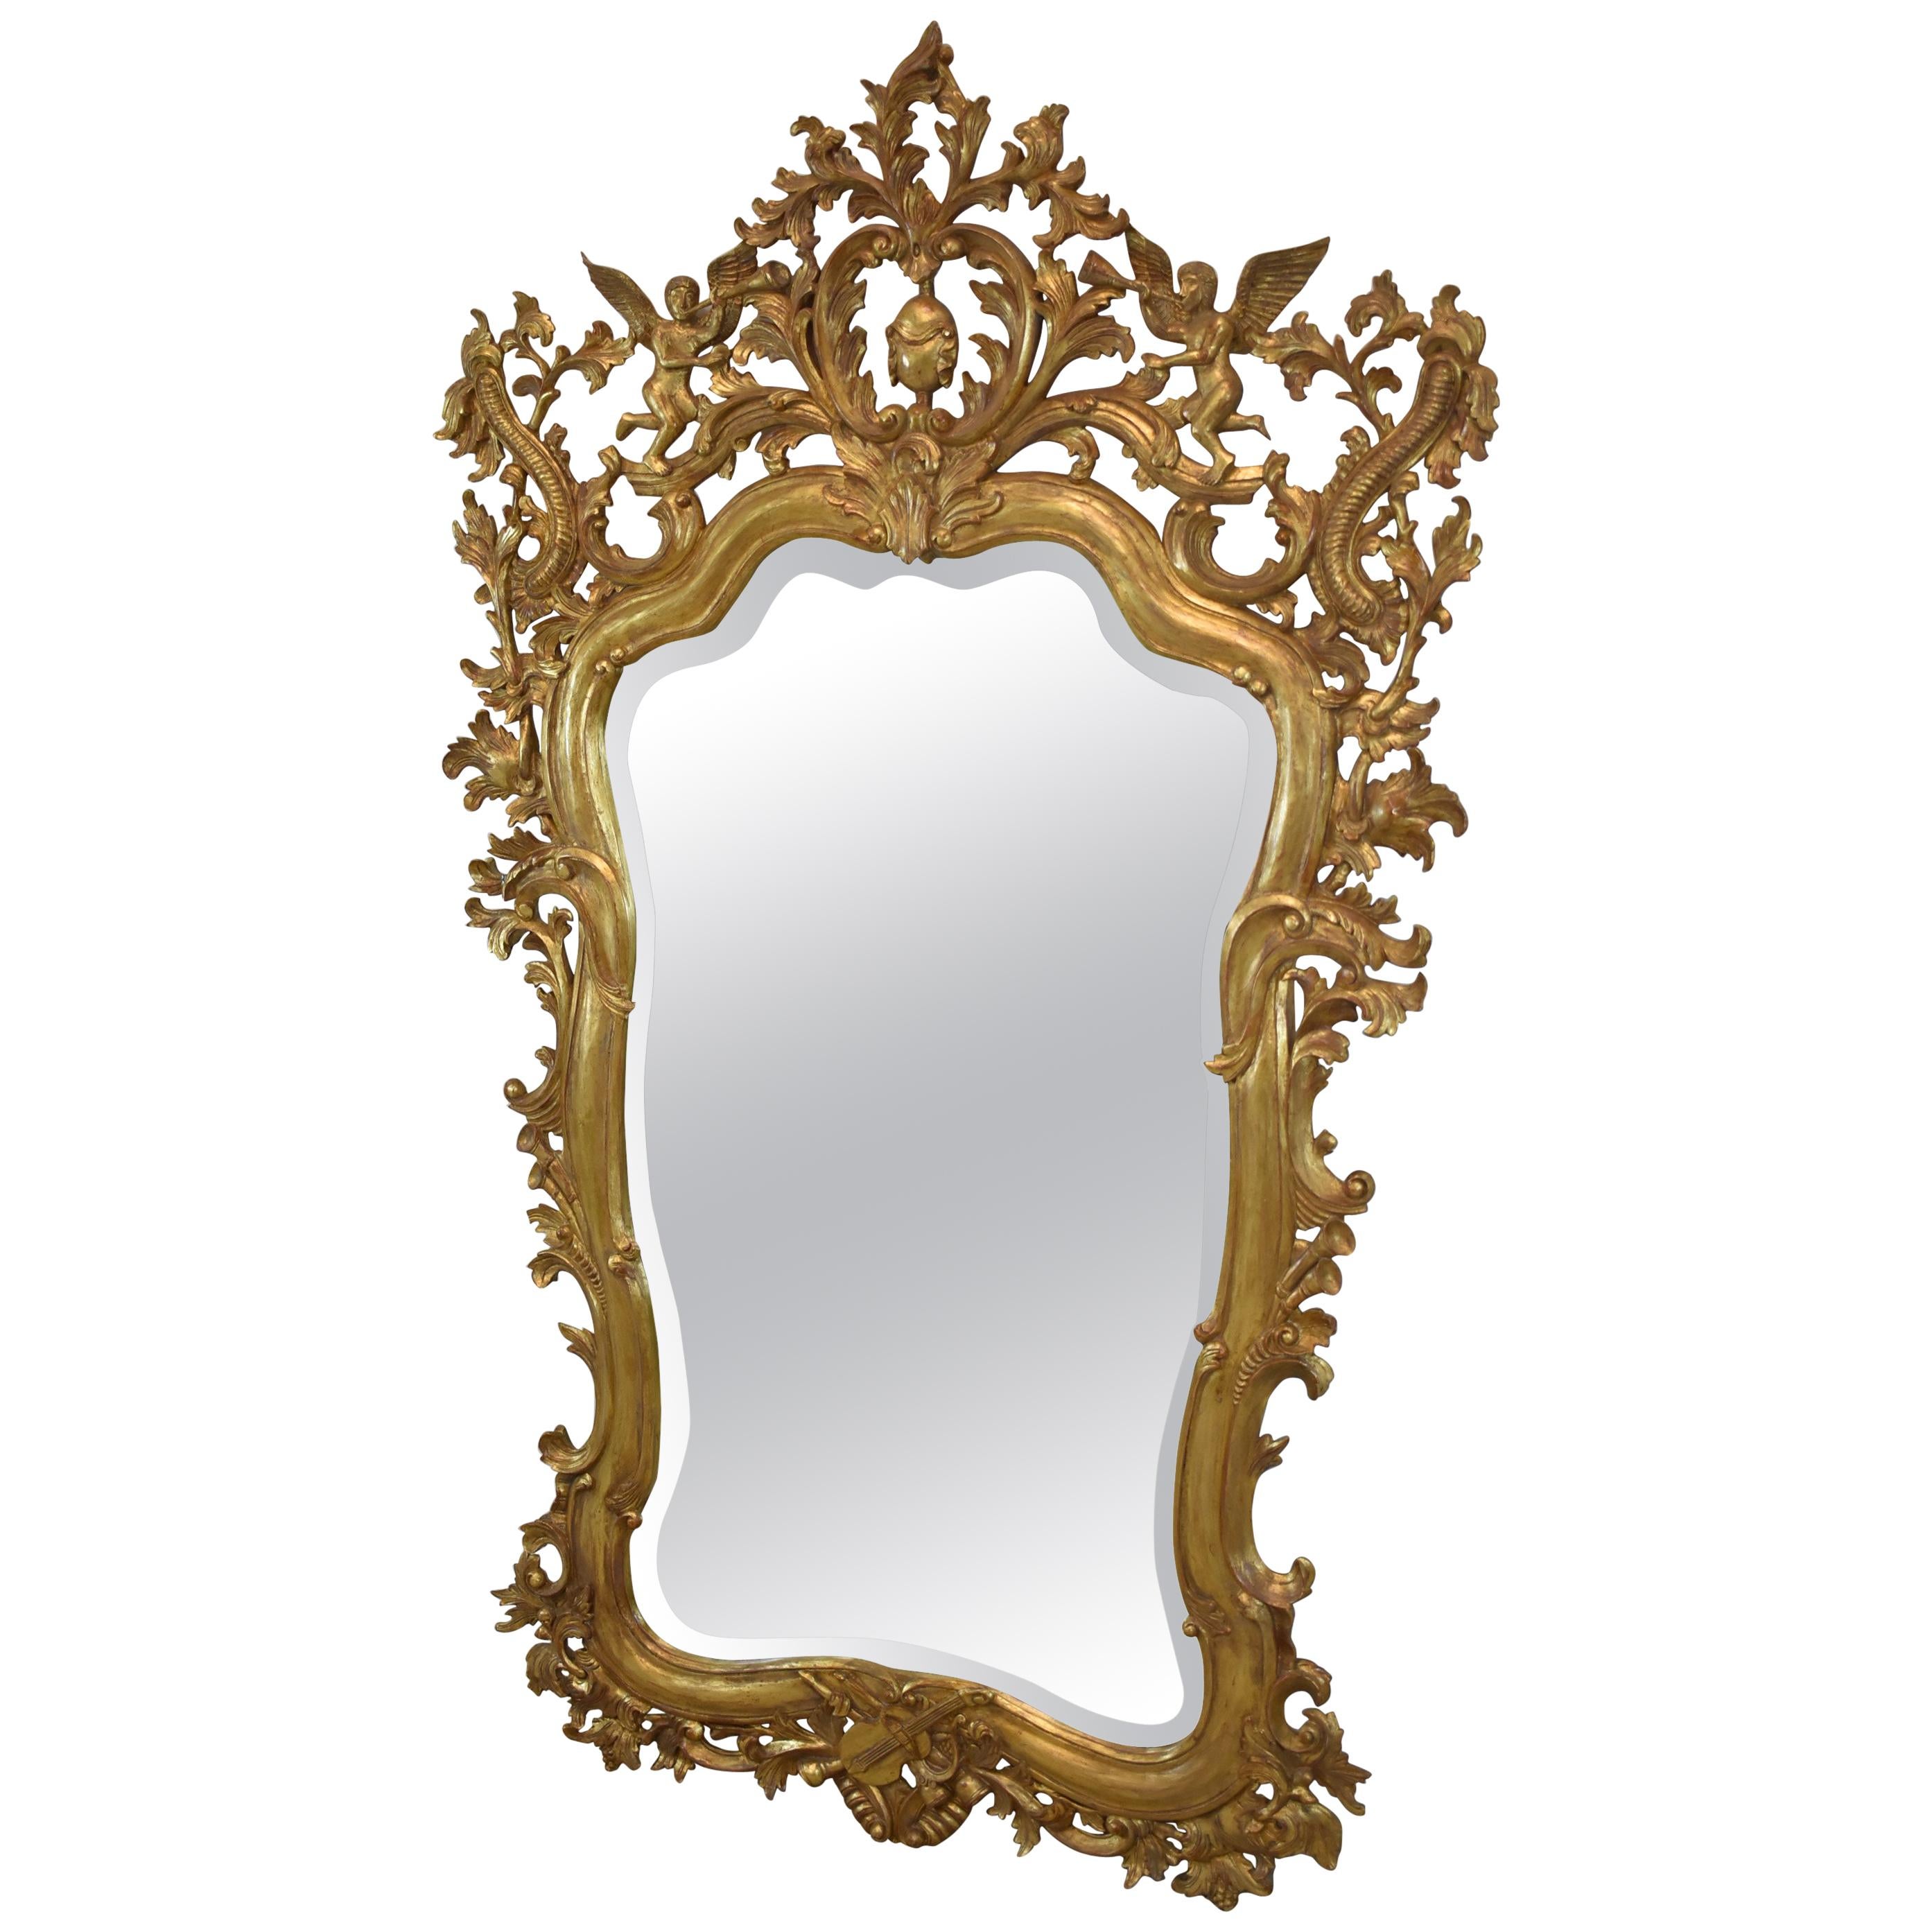 Miroir italien en bois sculpté et doré représentant des anges qui trompent, biseauté